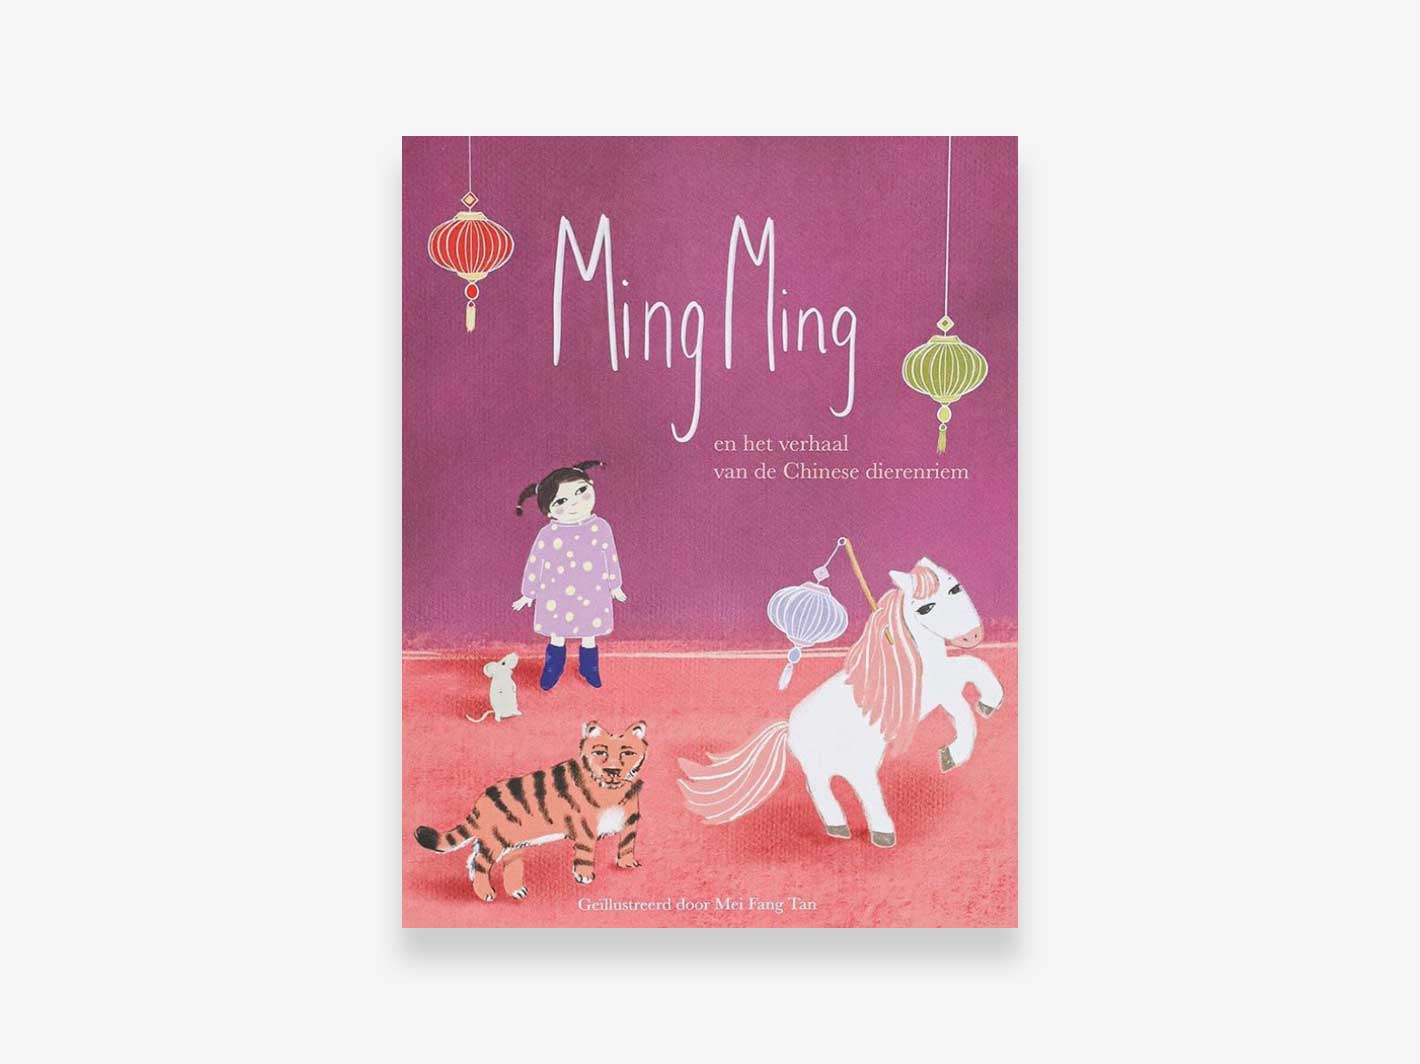 Ming Ming en het verhaal van de Chinese dierenriem